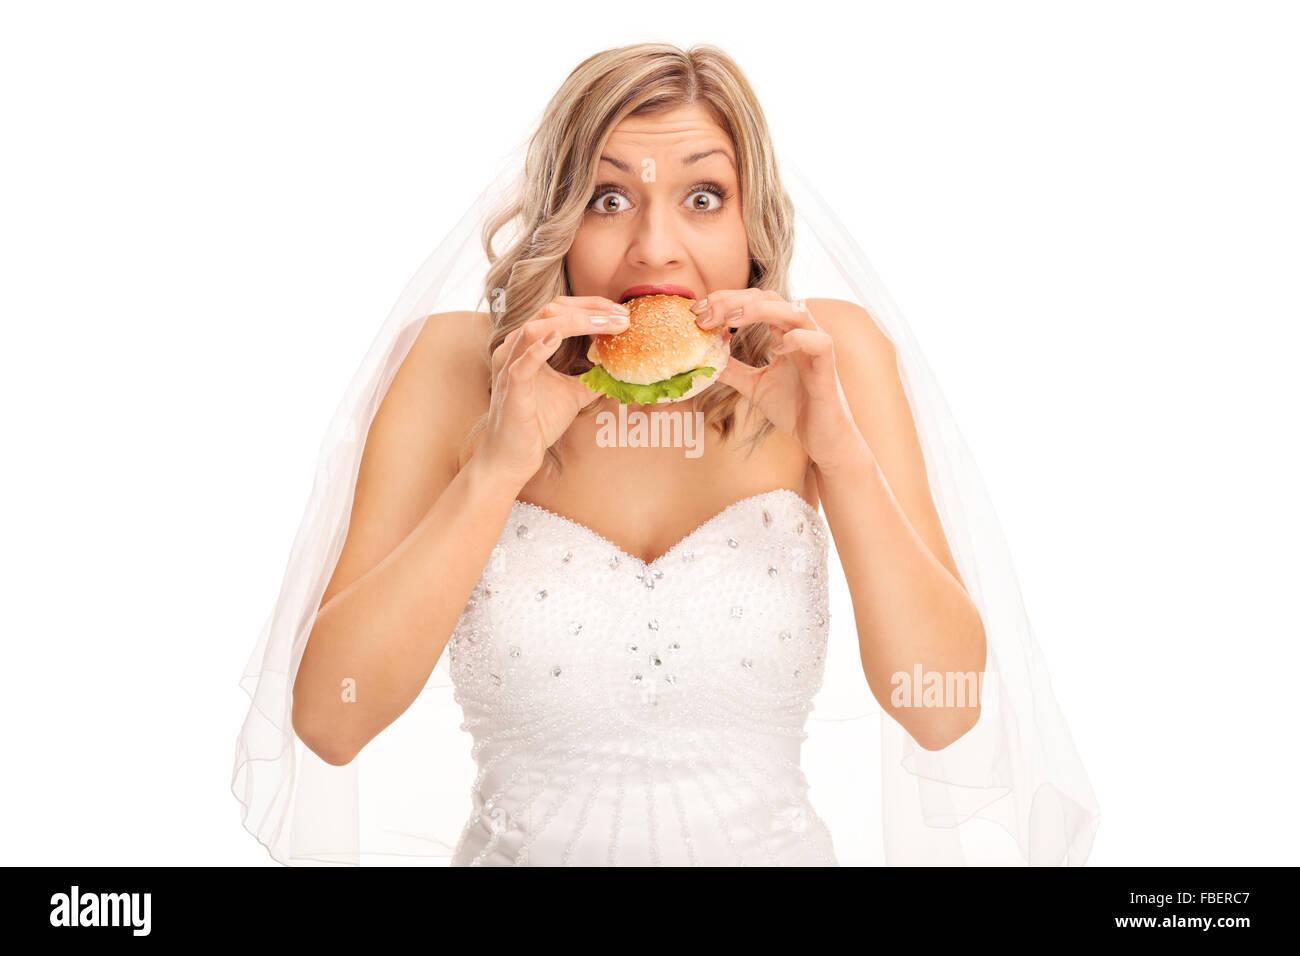 Blonde bride surpris en train de manger un sandwich et regardant la caméra isolé sur fond blanc Banque D'Images